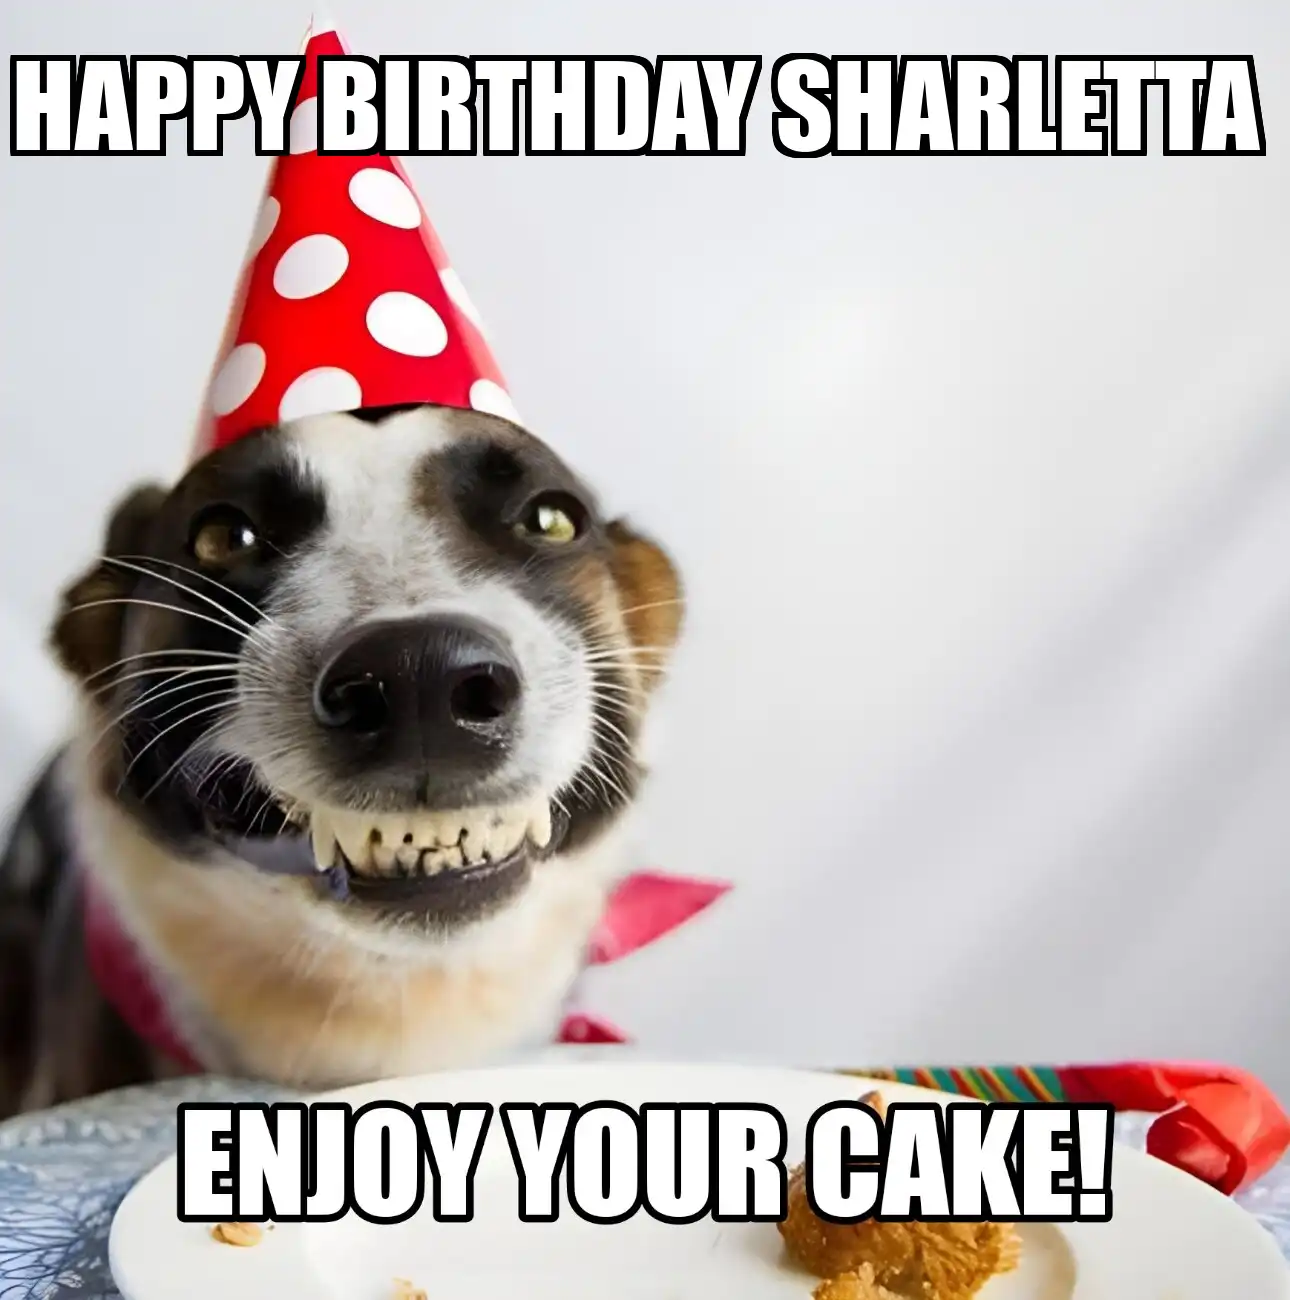 Happy Birthday Sharletta Enjoy Your Cake Dog Meme